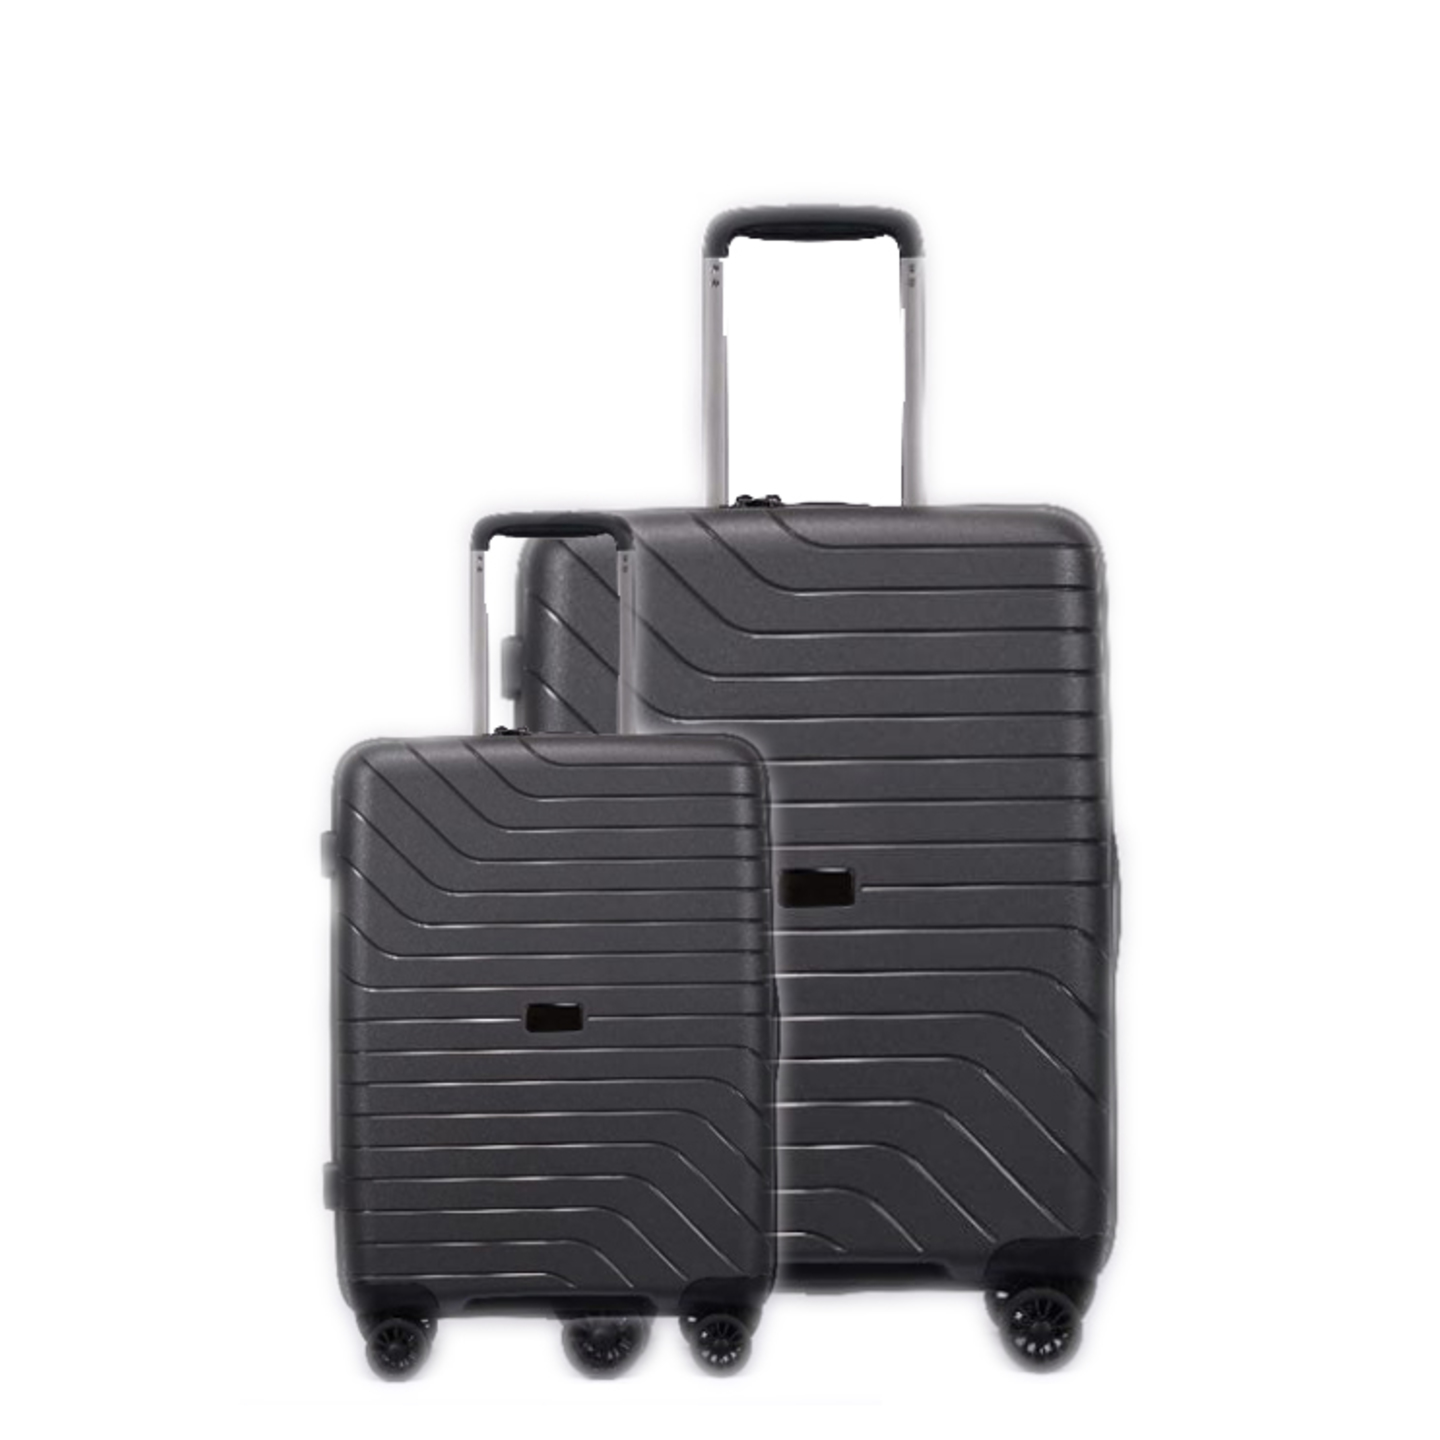 RV-88 Elegant Hard Box Luggage 20 inch28 inch